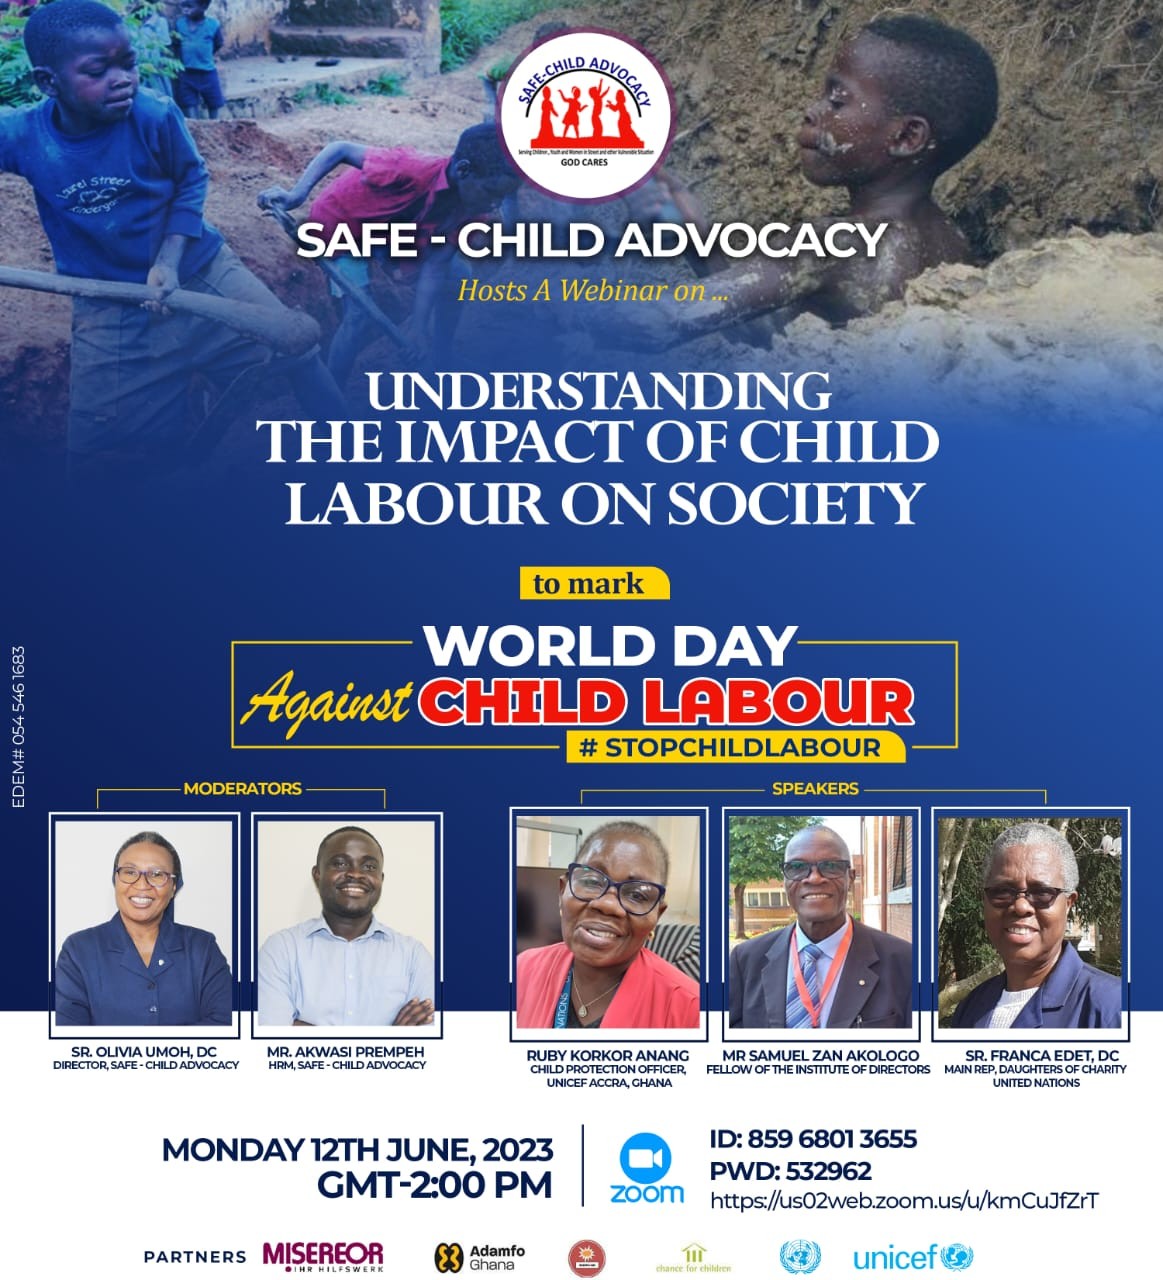 “Pôr fim à exploração de crianças": Um webinar com participantes de Gana sobre o impacto do trabalho infantil na sociedade e estratégias para o futuro